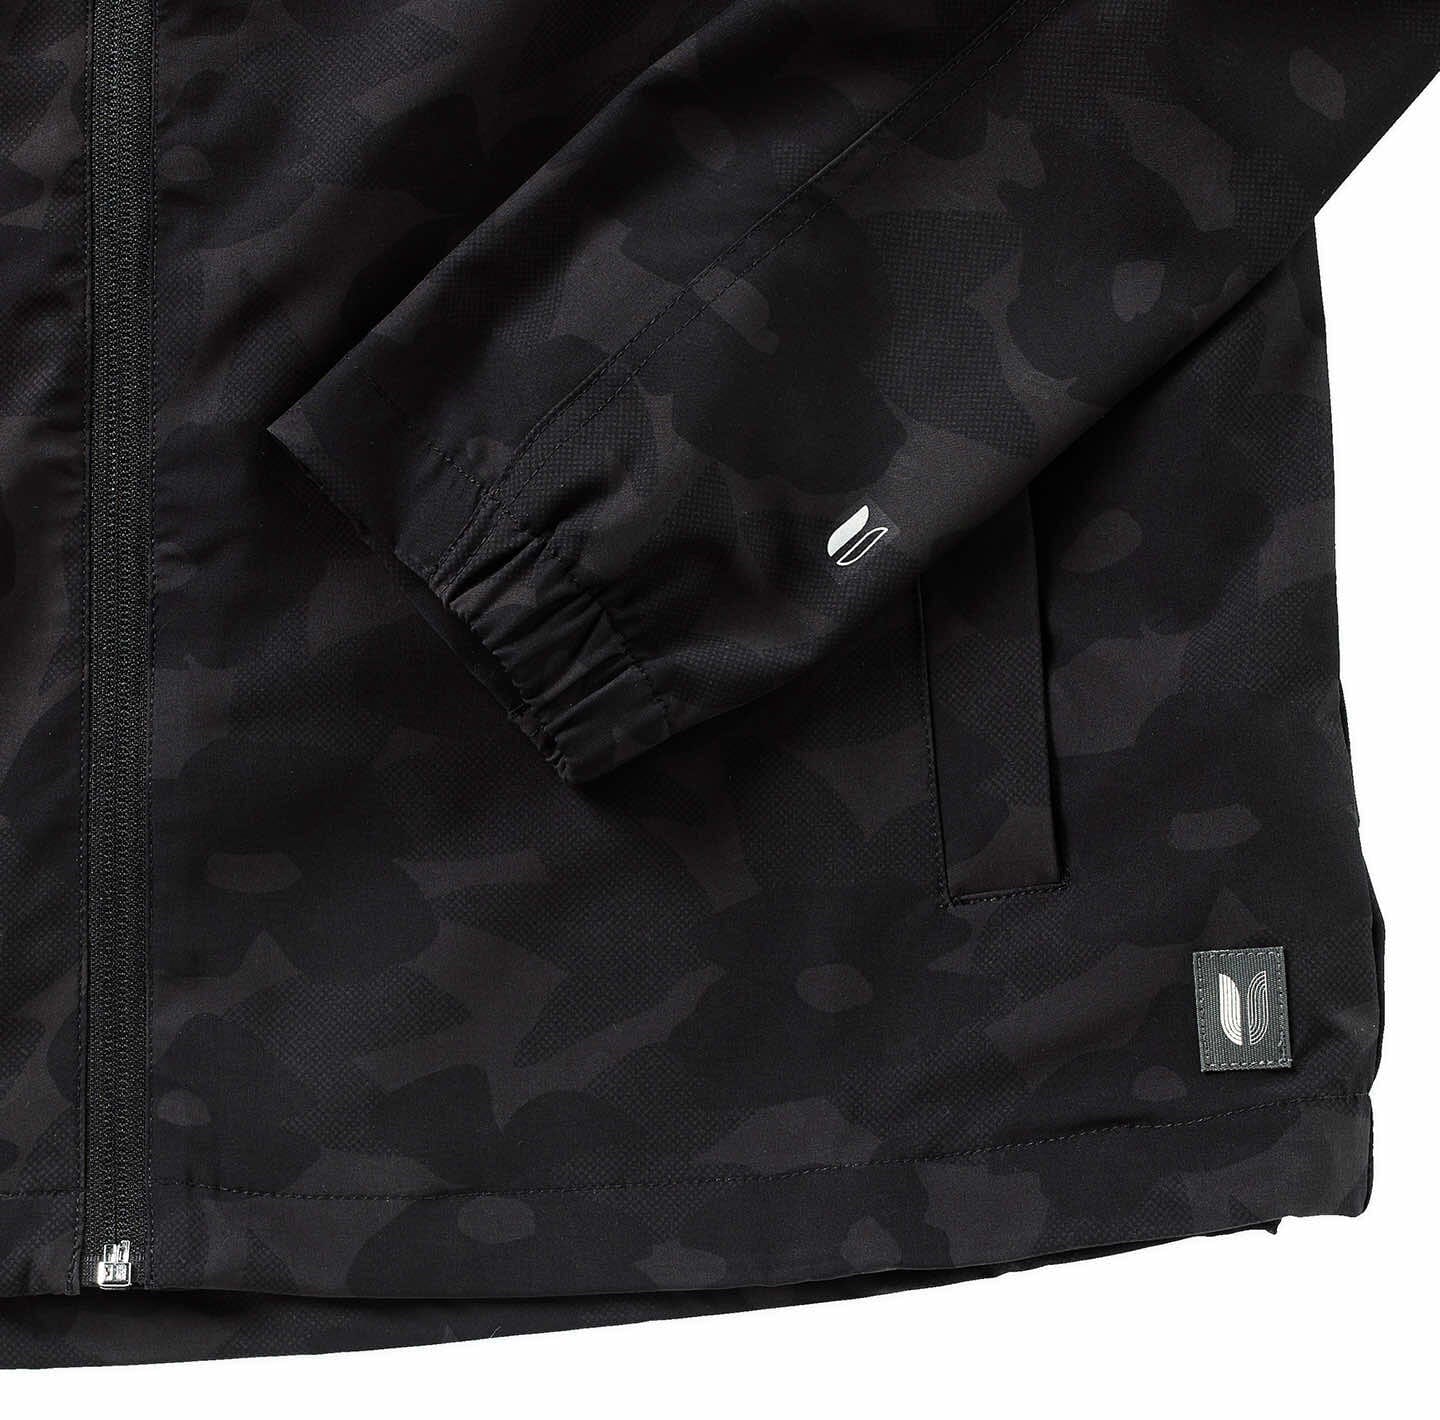 West Louis jacket wind breaker Regular fit Size L mens zip up long sleeve